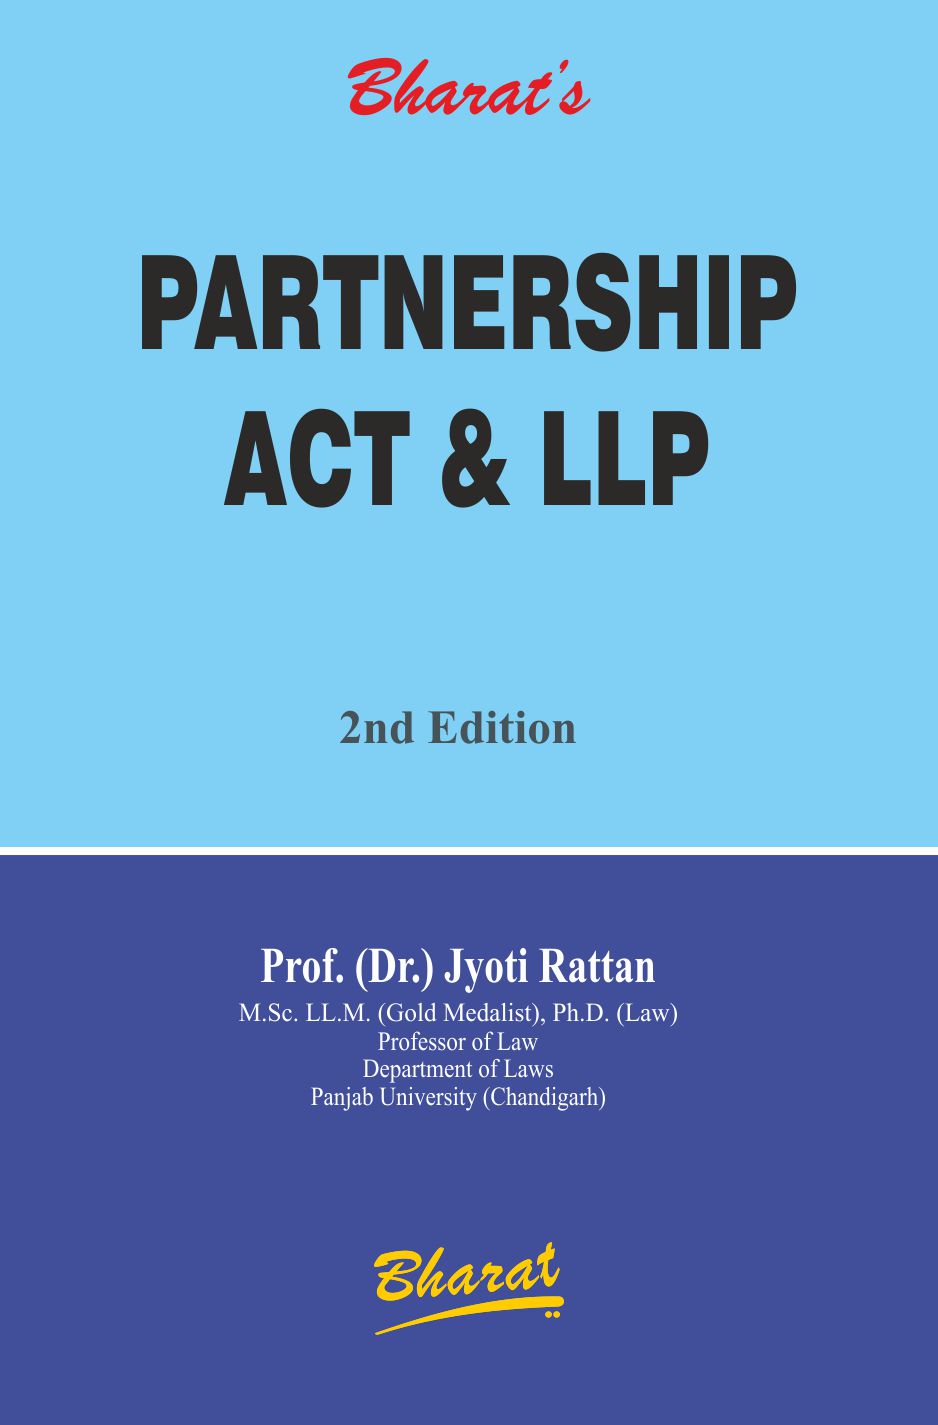 PARTNERSHIP ACT & LLP